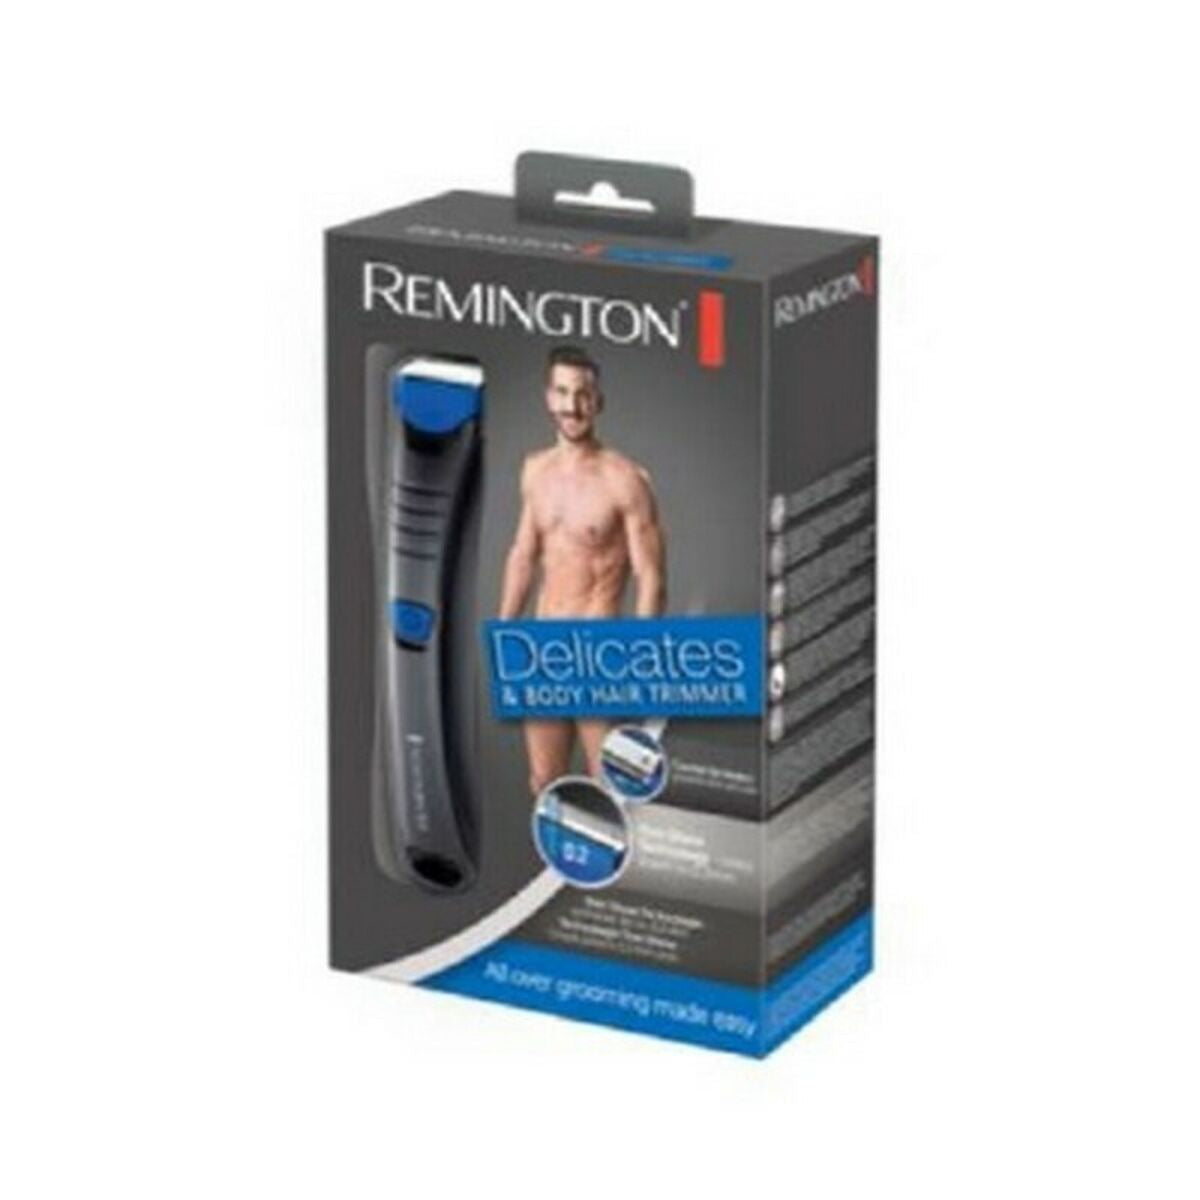 Kaufe Remington BHT250 Kabellose Haarschneidemaschine bei AWK Flagship um € 55.00